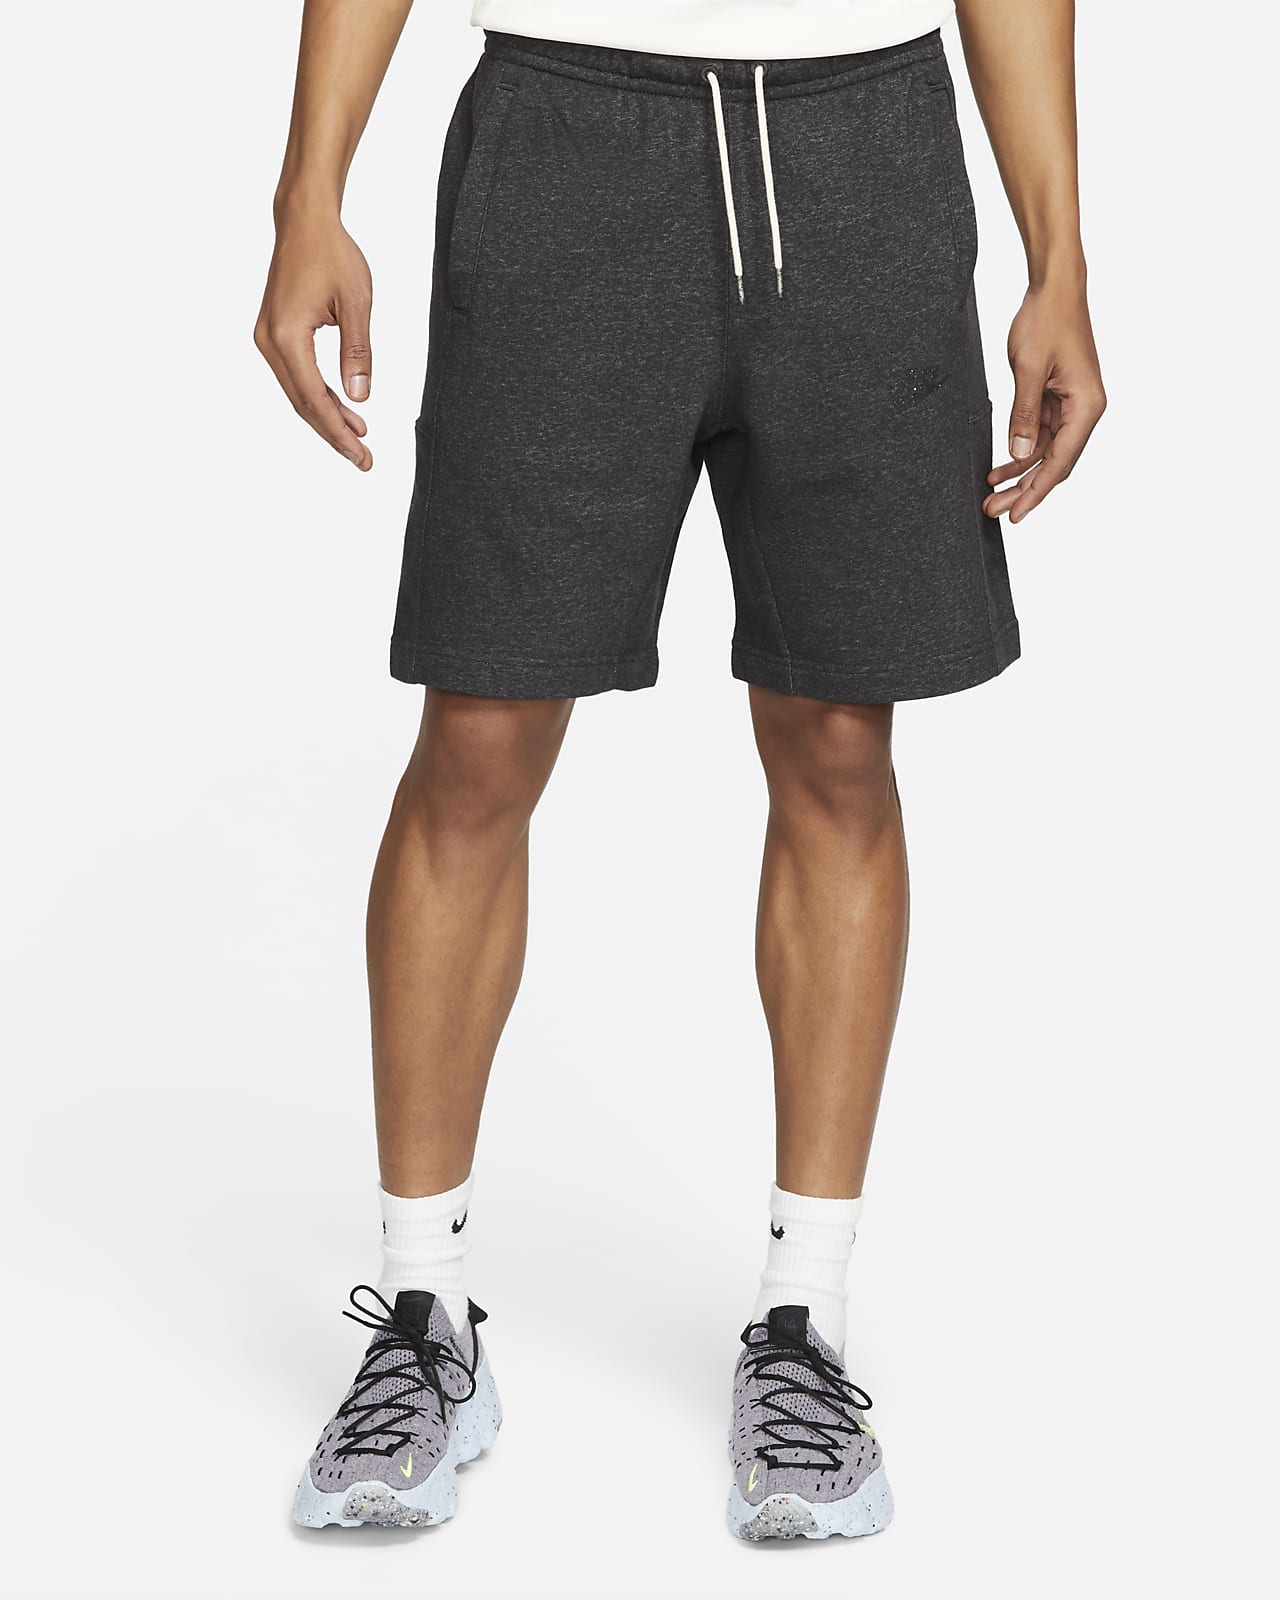 men's shorts nike sportswear